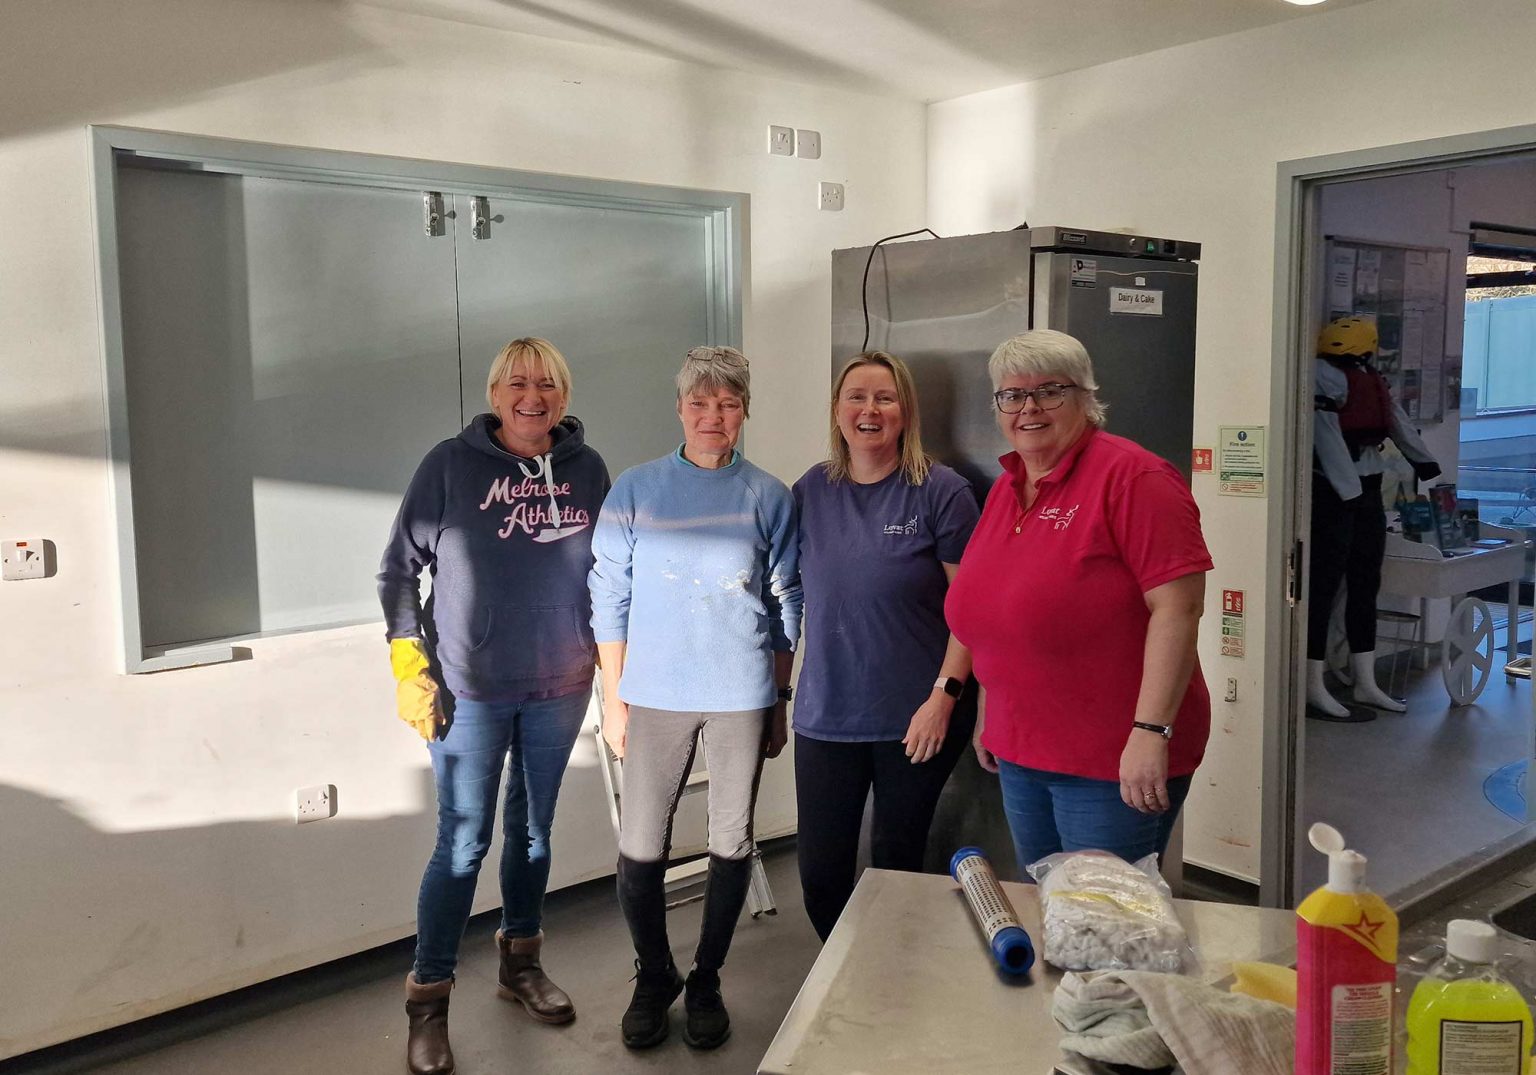 Lovat's team ready to start volunteering in the kitchen